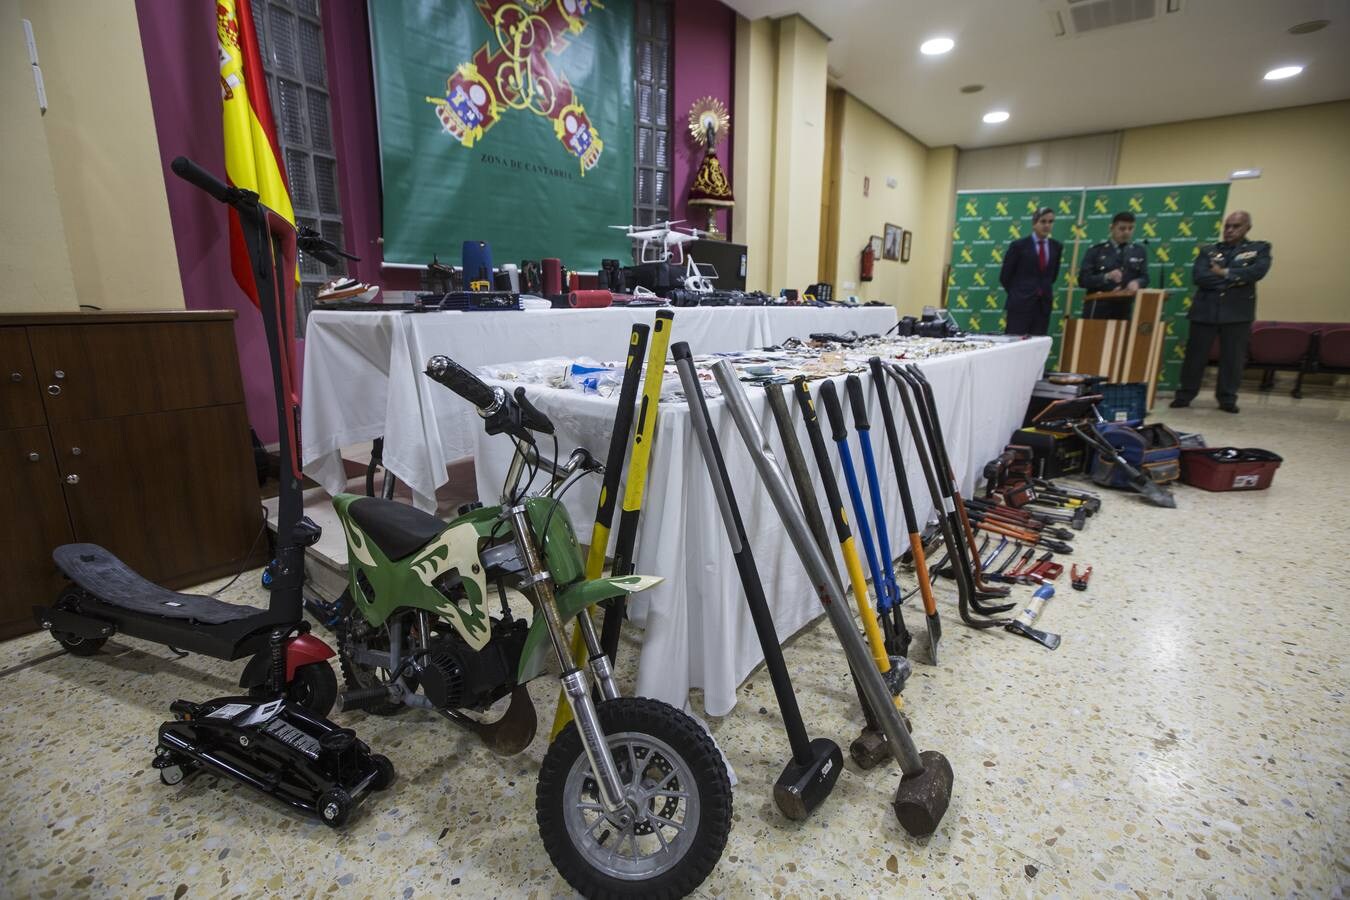 La Guardia Civil muestra la multitud de objetos robados por el clan afincado en caravanas en Astillero. Cuatro de los cabecillas están en prisión